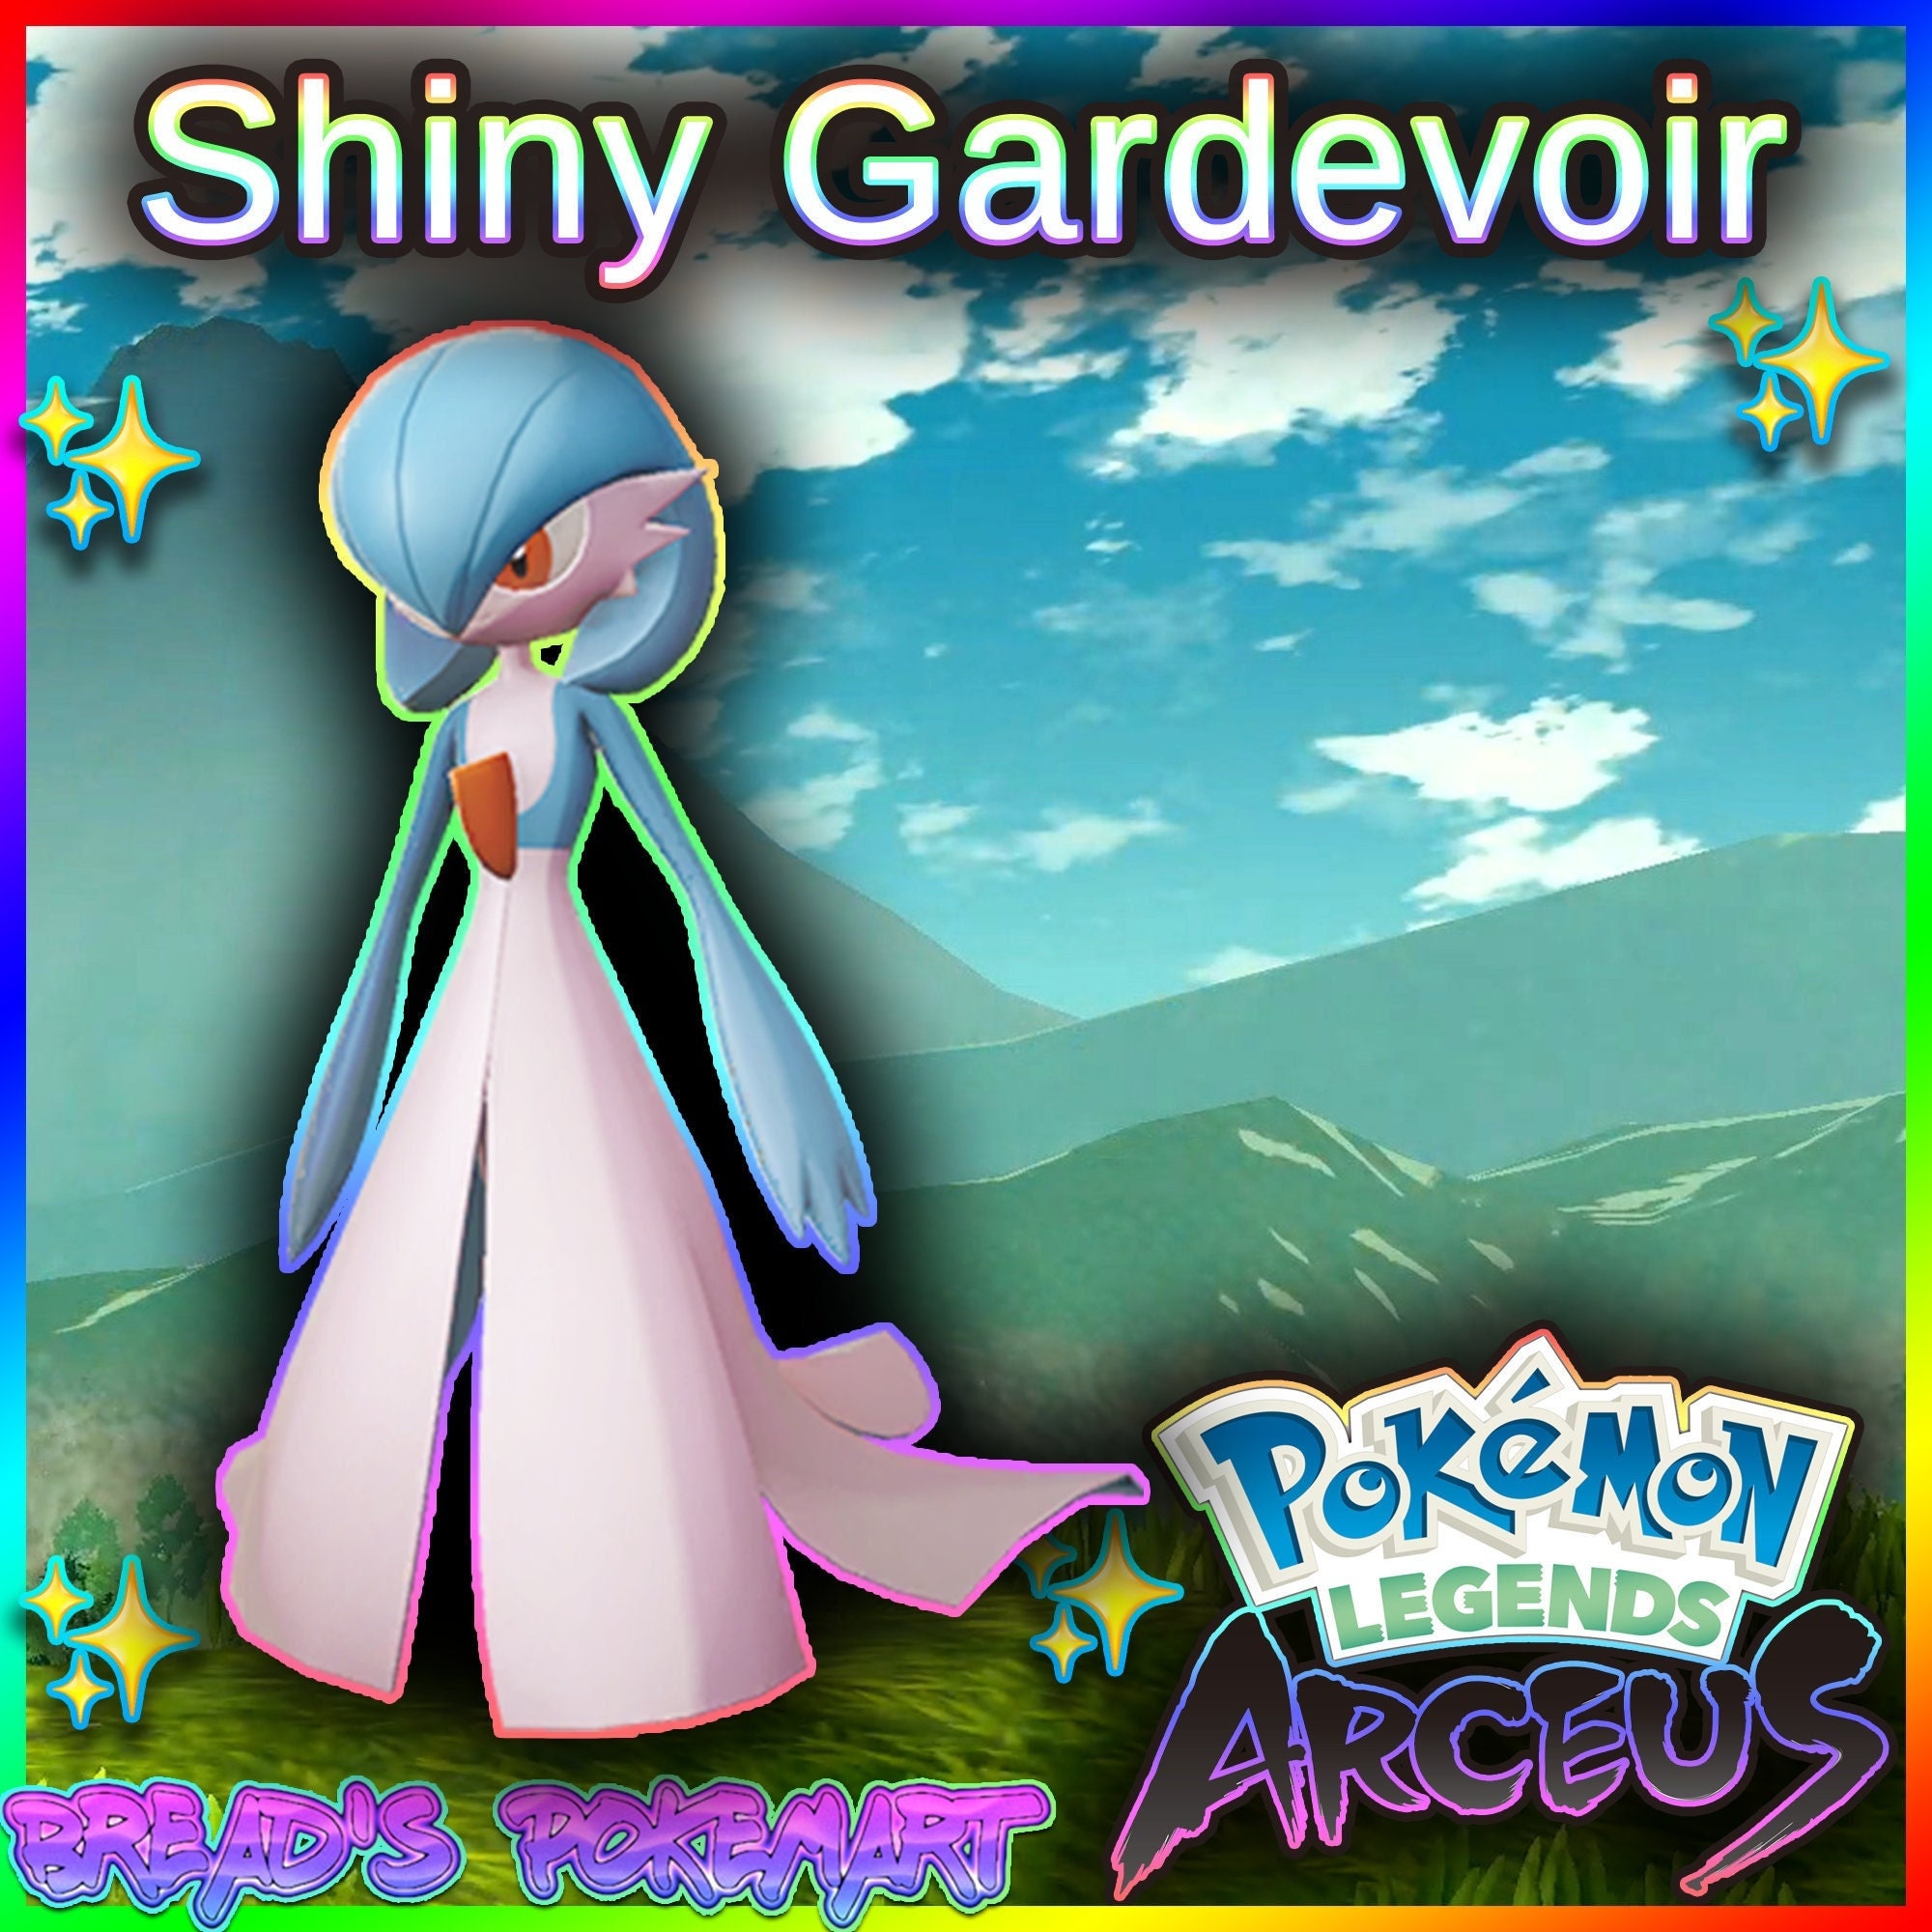 Pokemon : Gardevoir (Shiny form) by Aqualish007 on DeviantArt